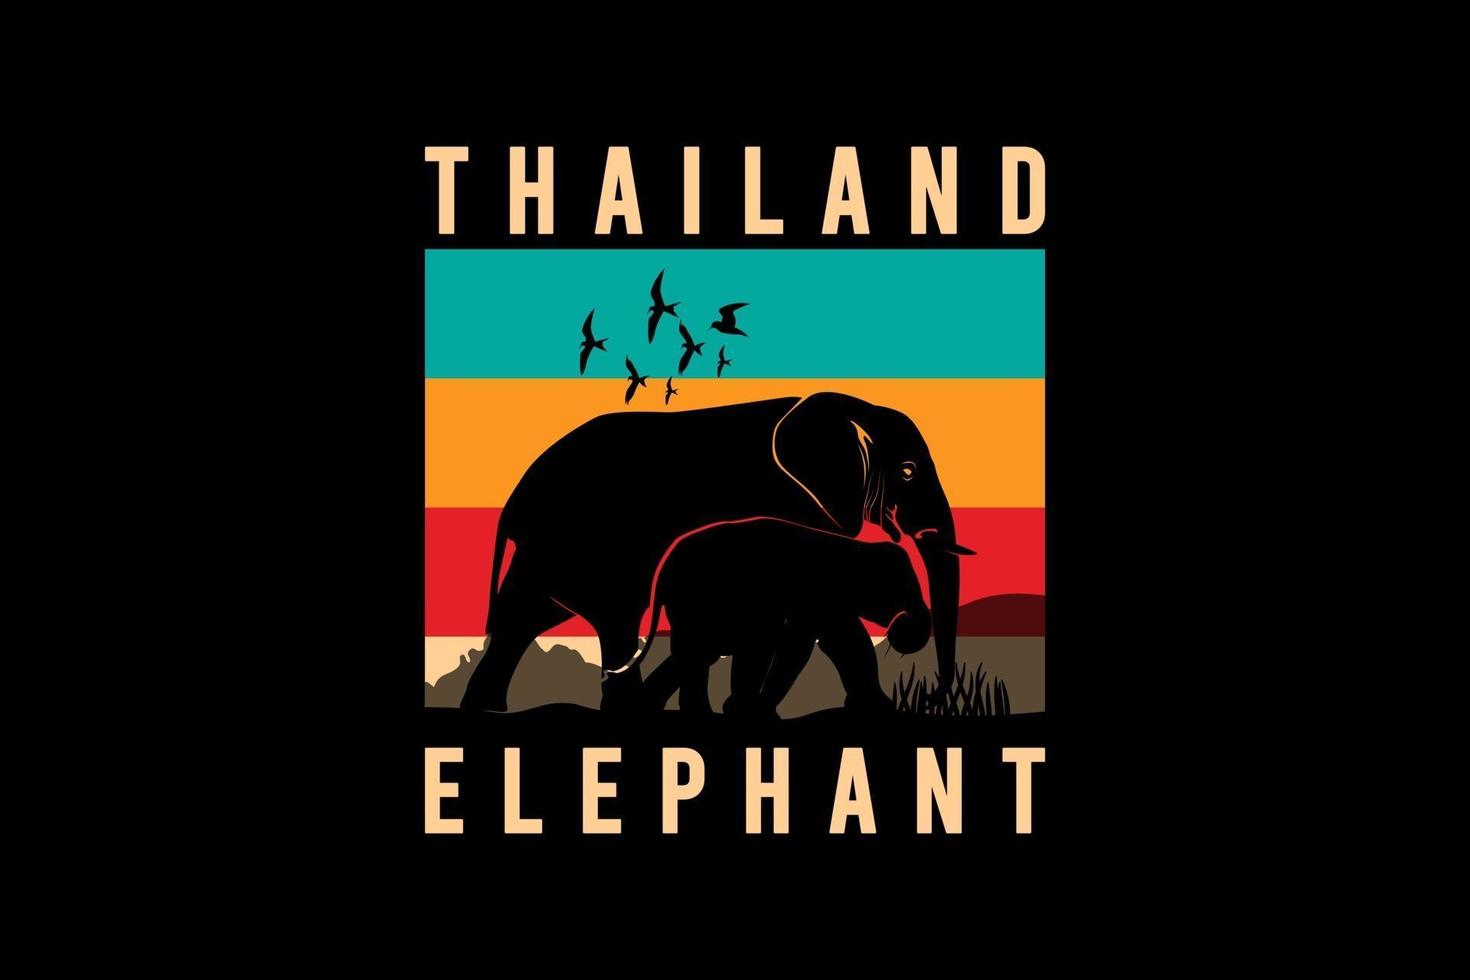 elefante thailandese, illustrazione di disegno a mano in stile vintage retrò vettore